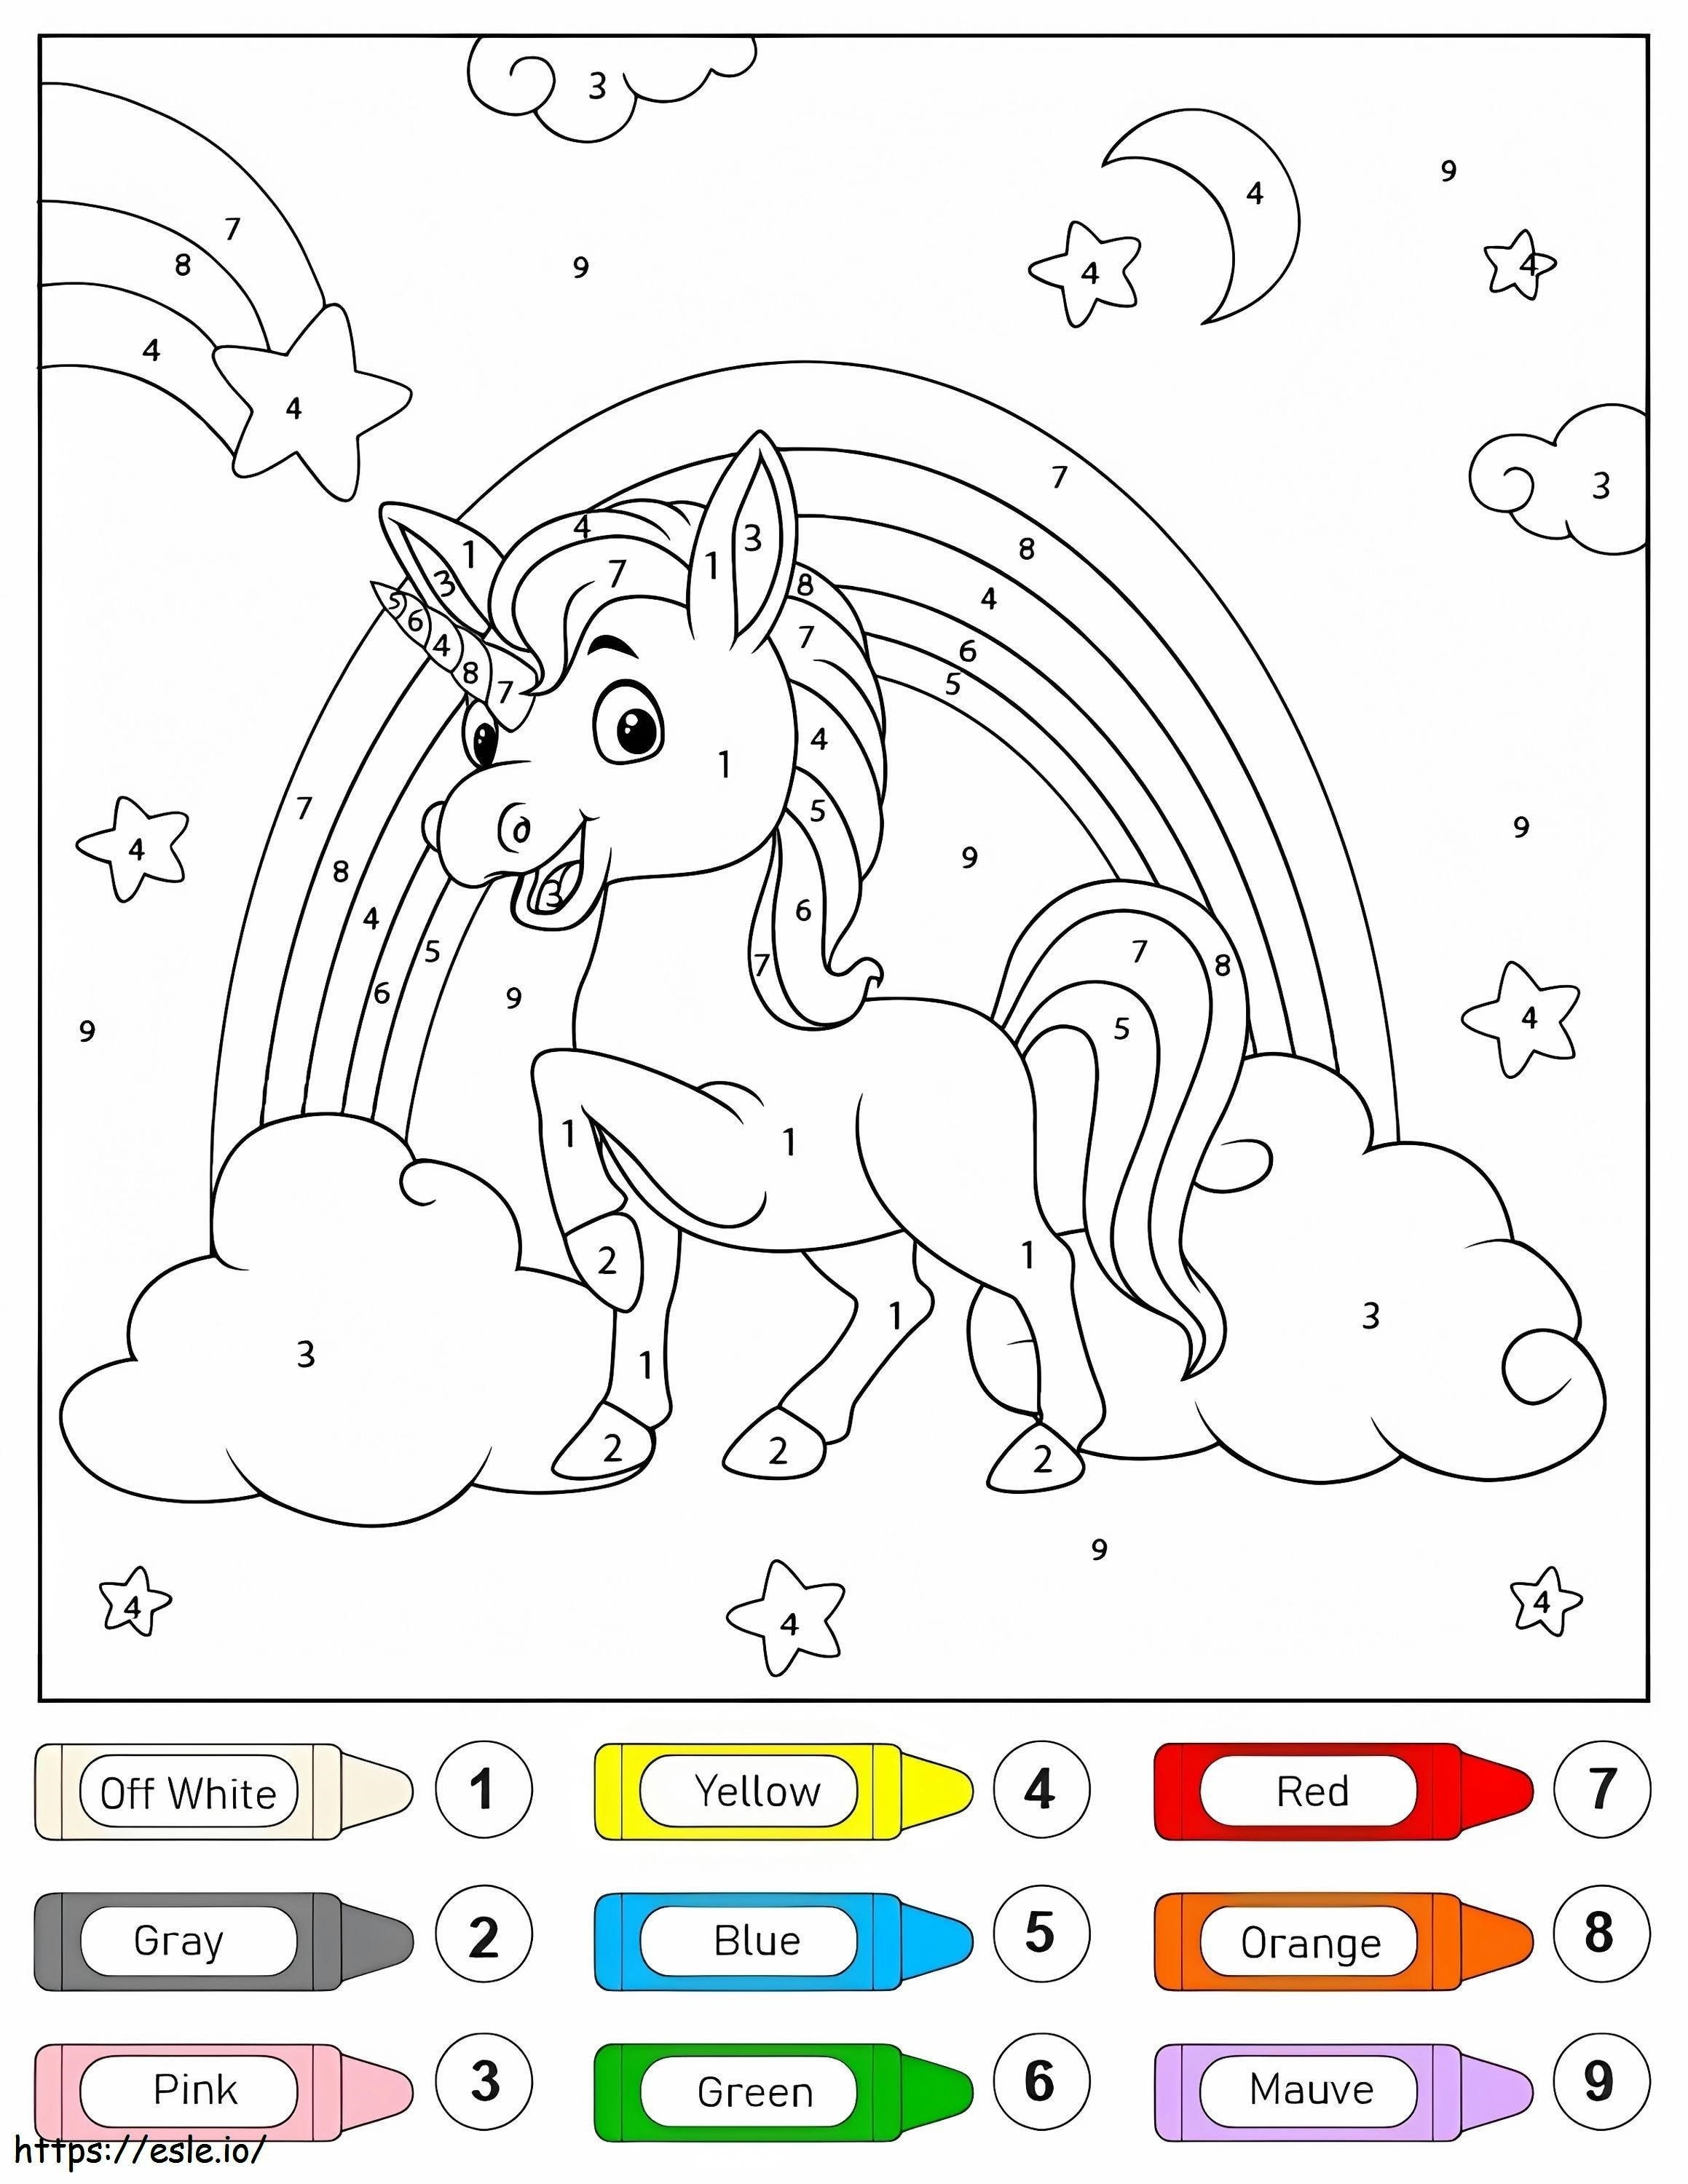 Colorear por Números Unicornio Marchando para colorear